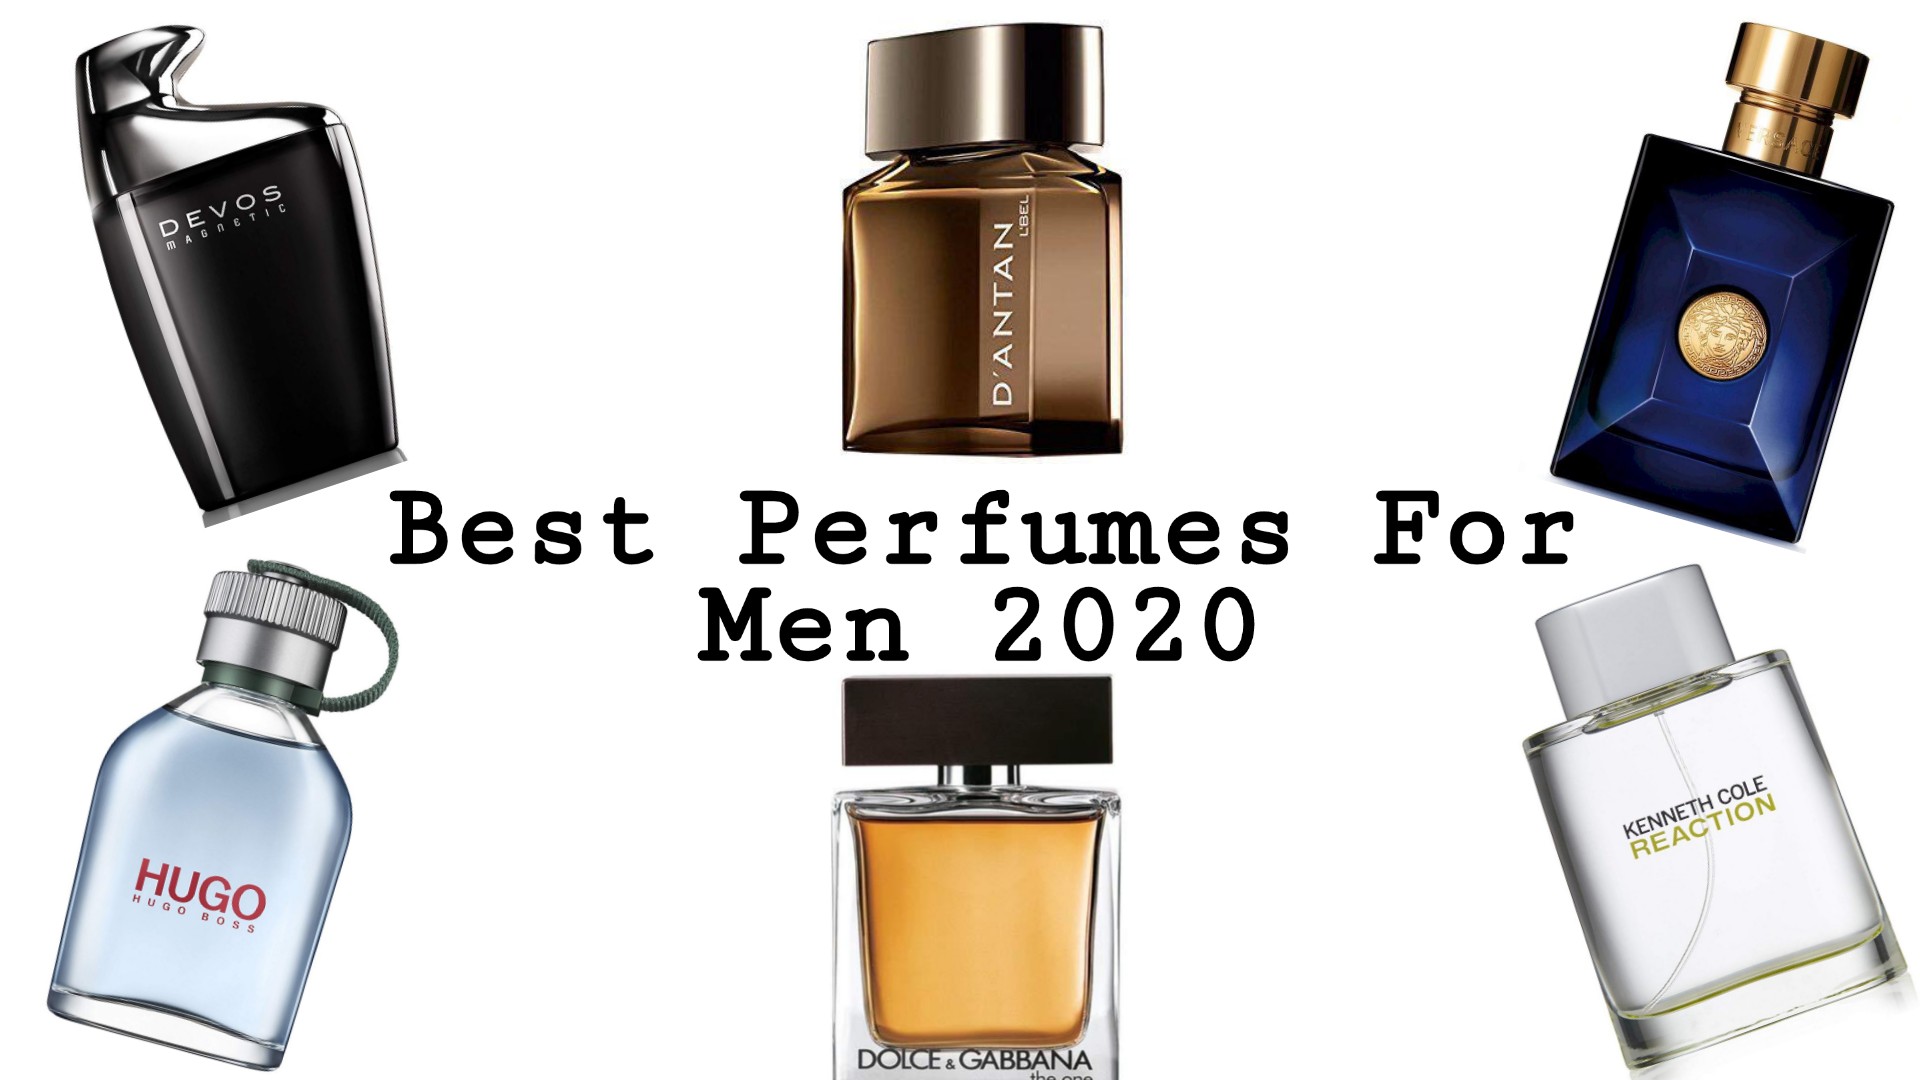 Top 10 Best Perfumes for Men 2020 